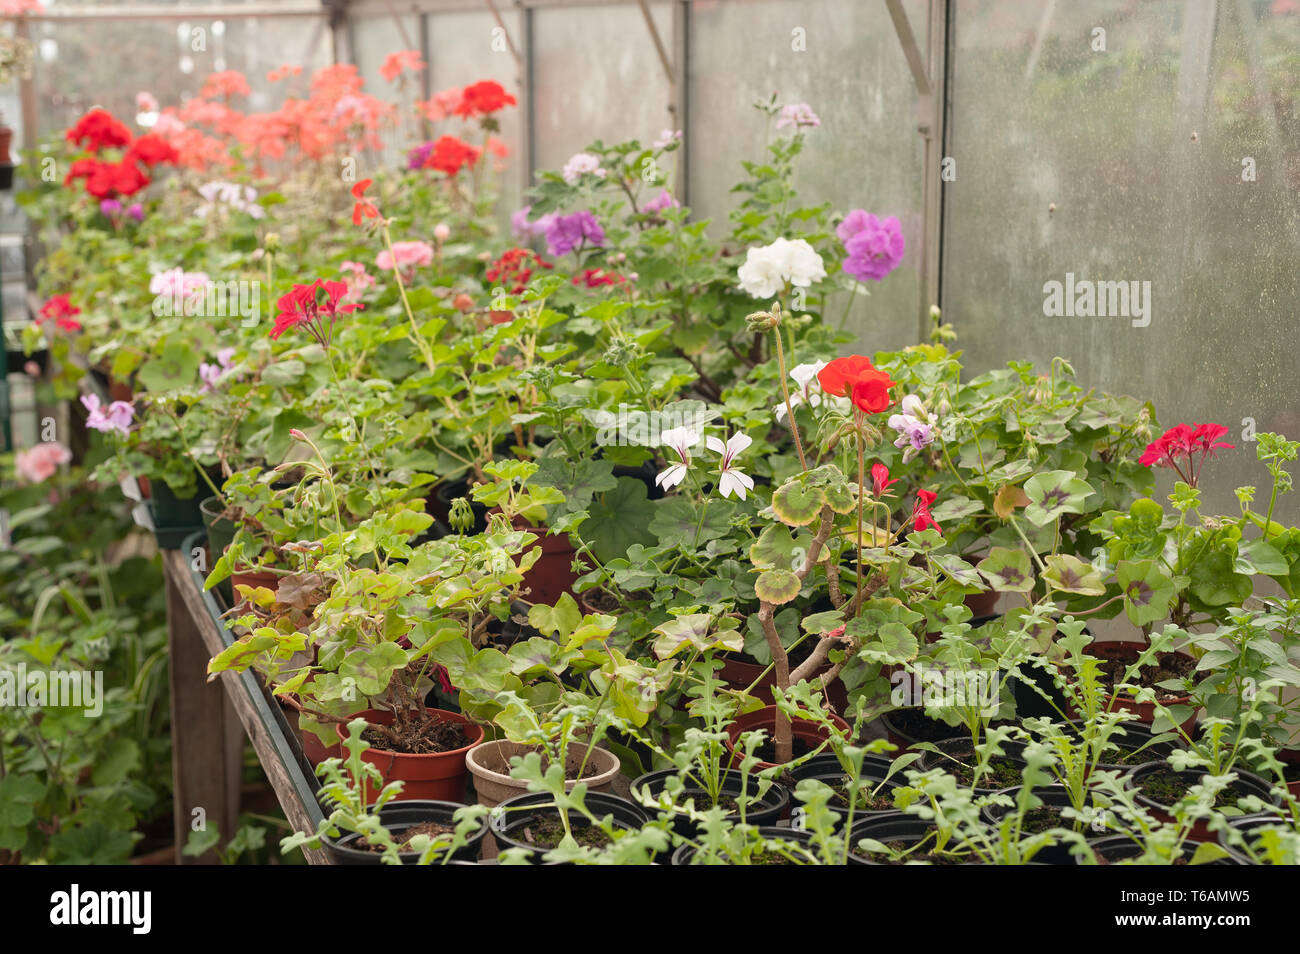 Serre chauffée forçant jardiniers récolte de fleurs, plantes d'être prêt pour le début de l'émission et la plantation dans le jardin en avril où la menace de frost Banque D'Images